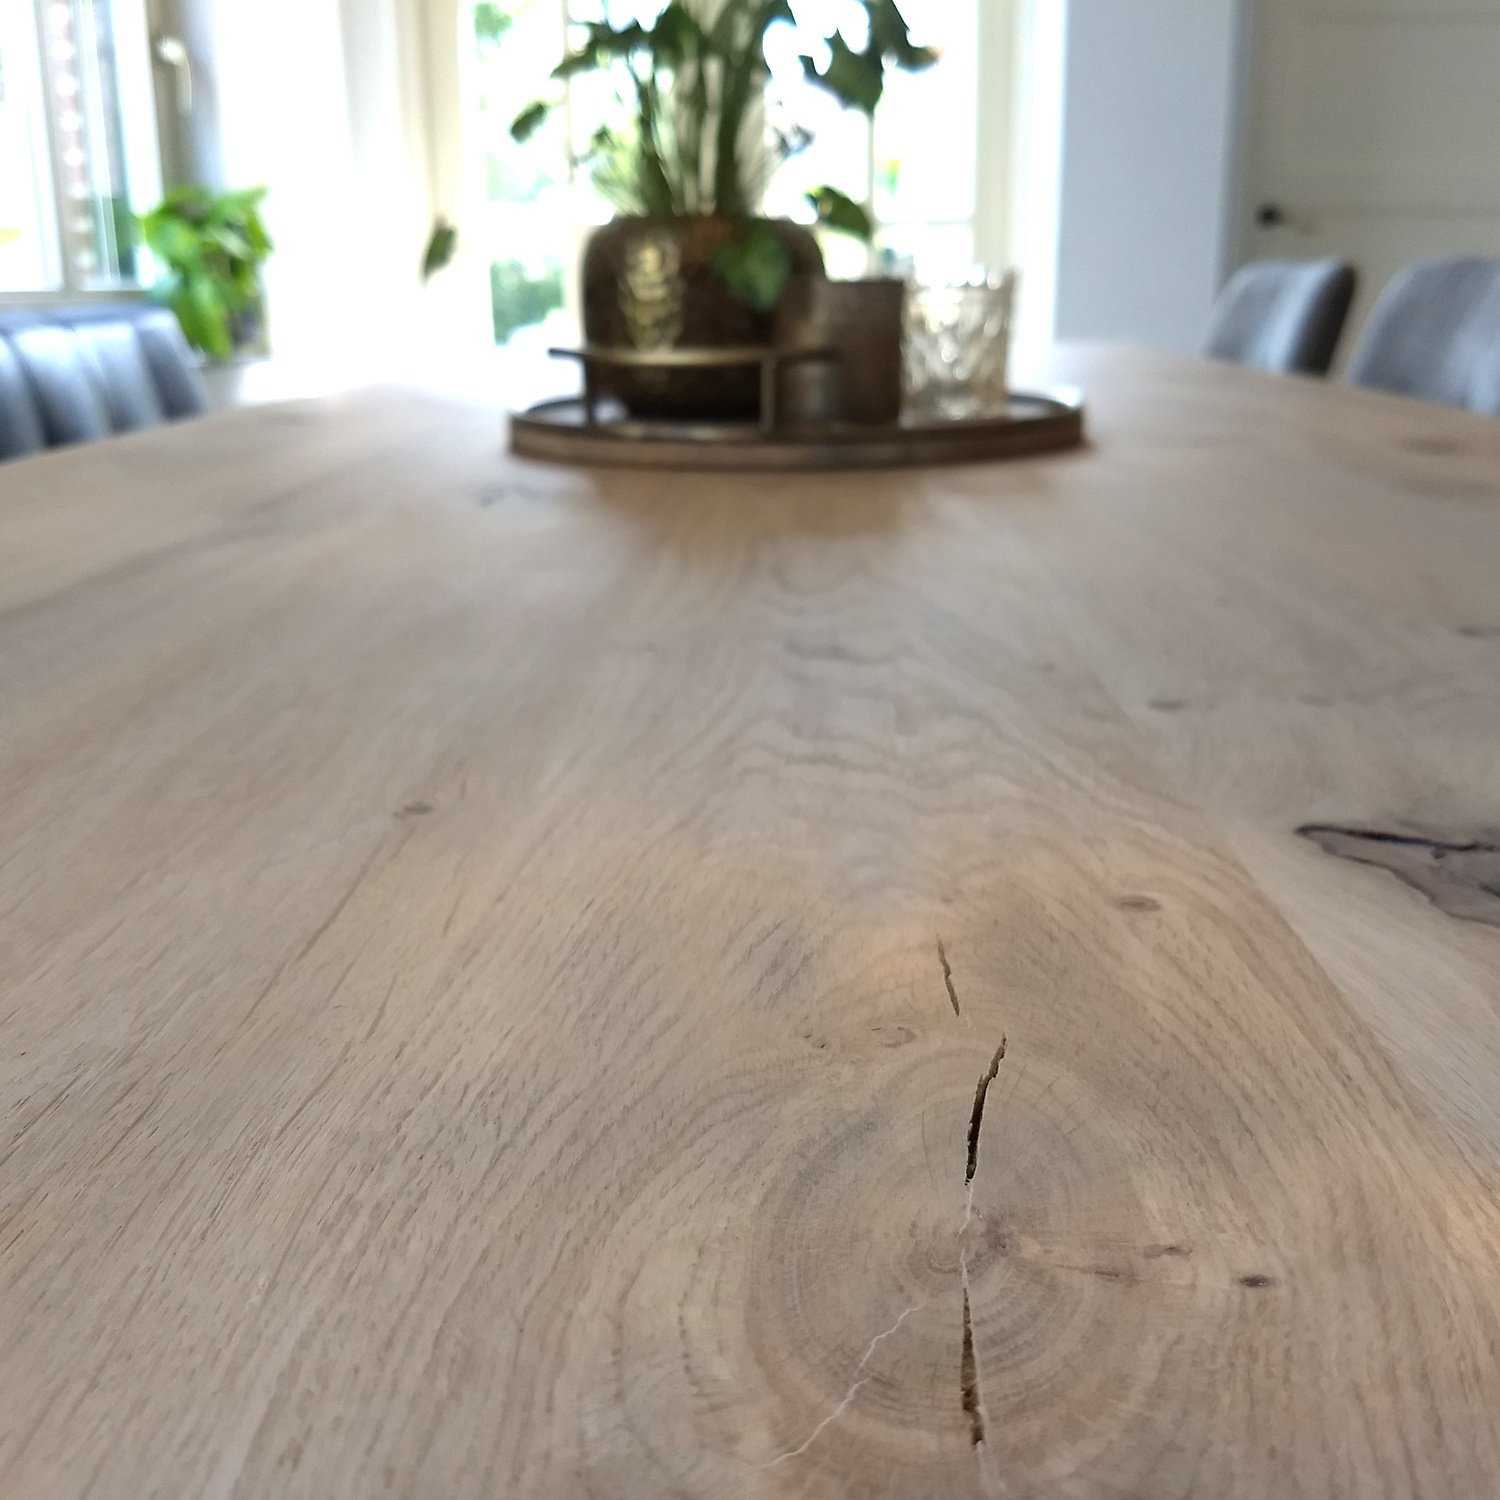  Tischplatte Eiche - Schweizer Kante - 2,7 cm dick (1-Schicht) - Breite Lamellen (10 - 12 cm breit) - Eichenholz rustikal - verleimt & künstlich getrocknet (HF 8-12%) - verschiedene Größen